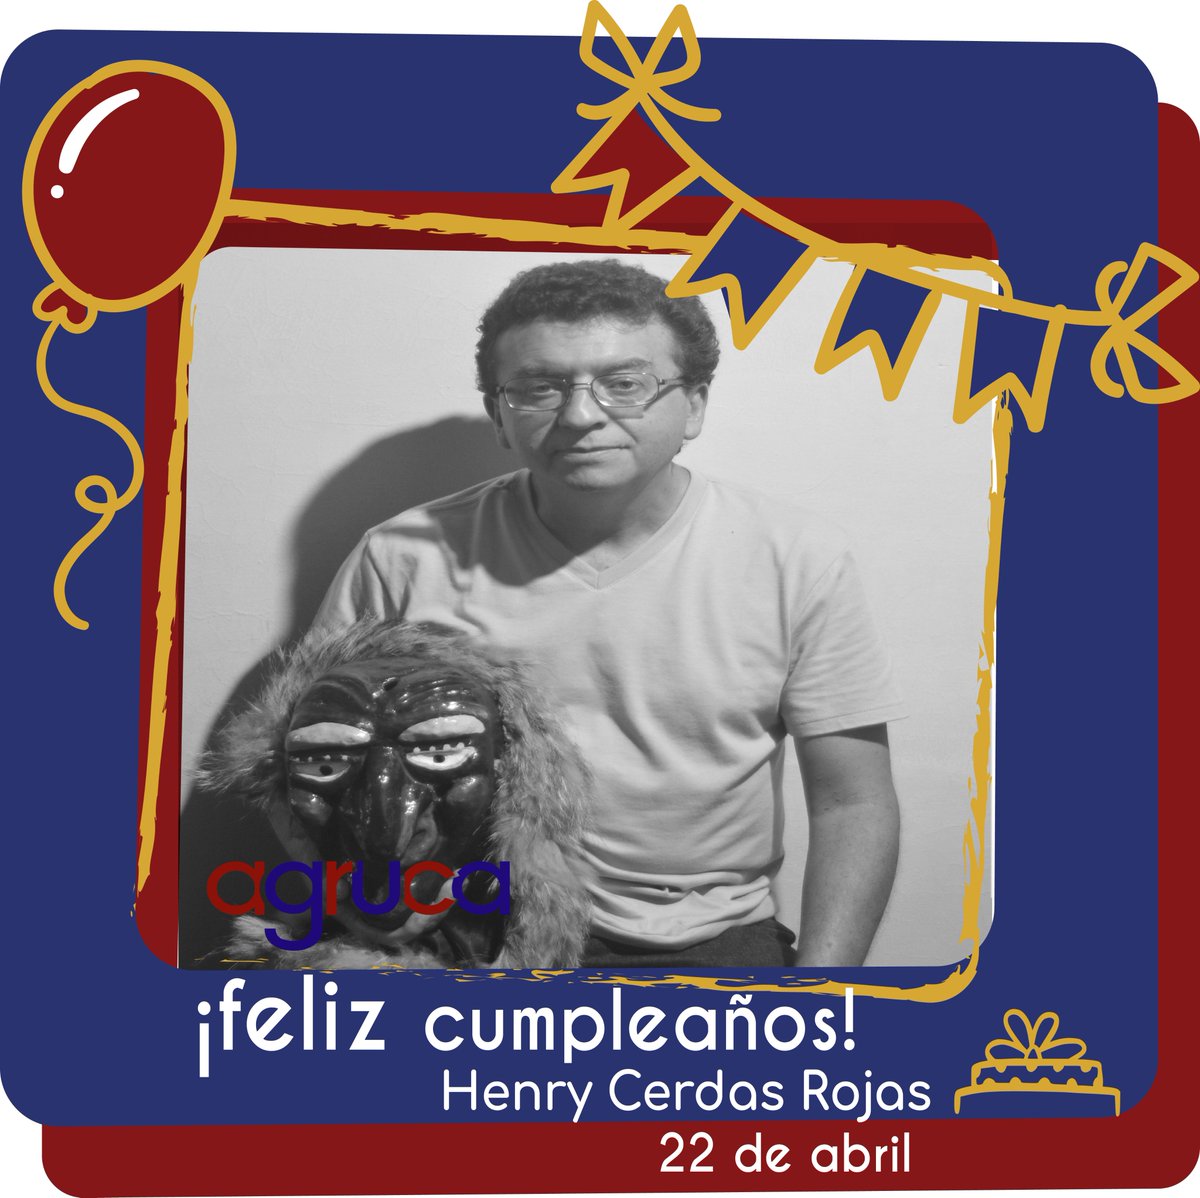 ¡Hoy celebramos el cumpleños de nuestro compañero Henry Cerdas Rojas! 🎂🥳🎈🎊
#somosfamilia #somosagruca